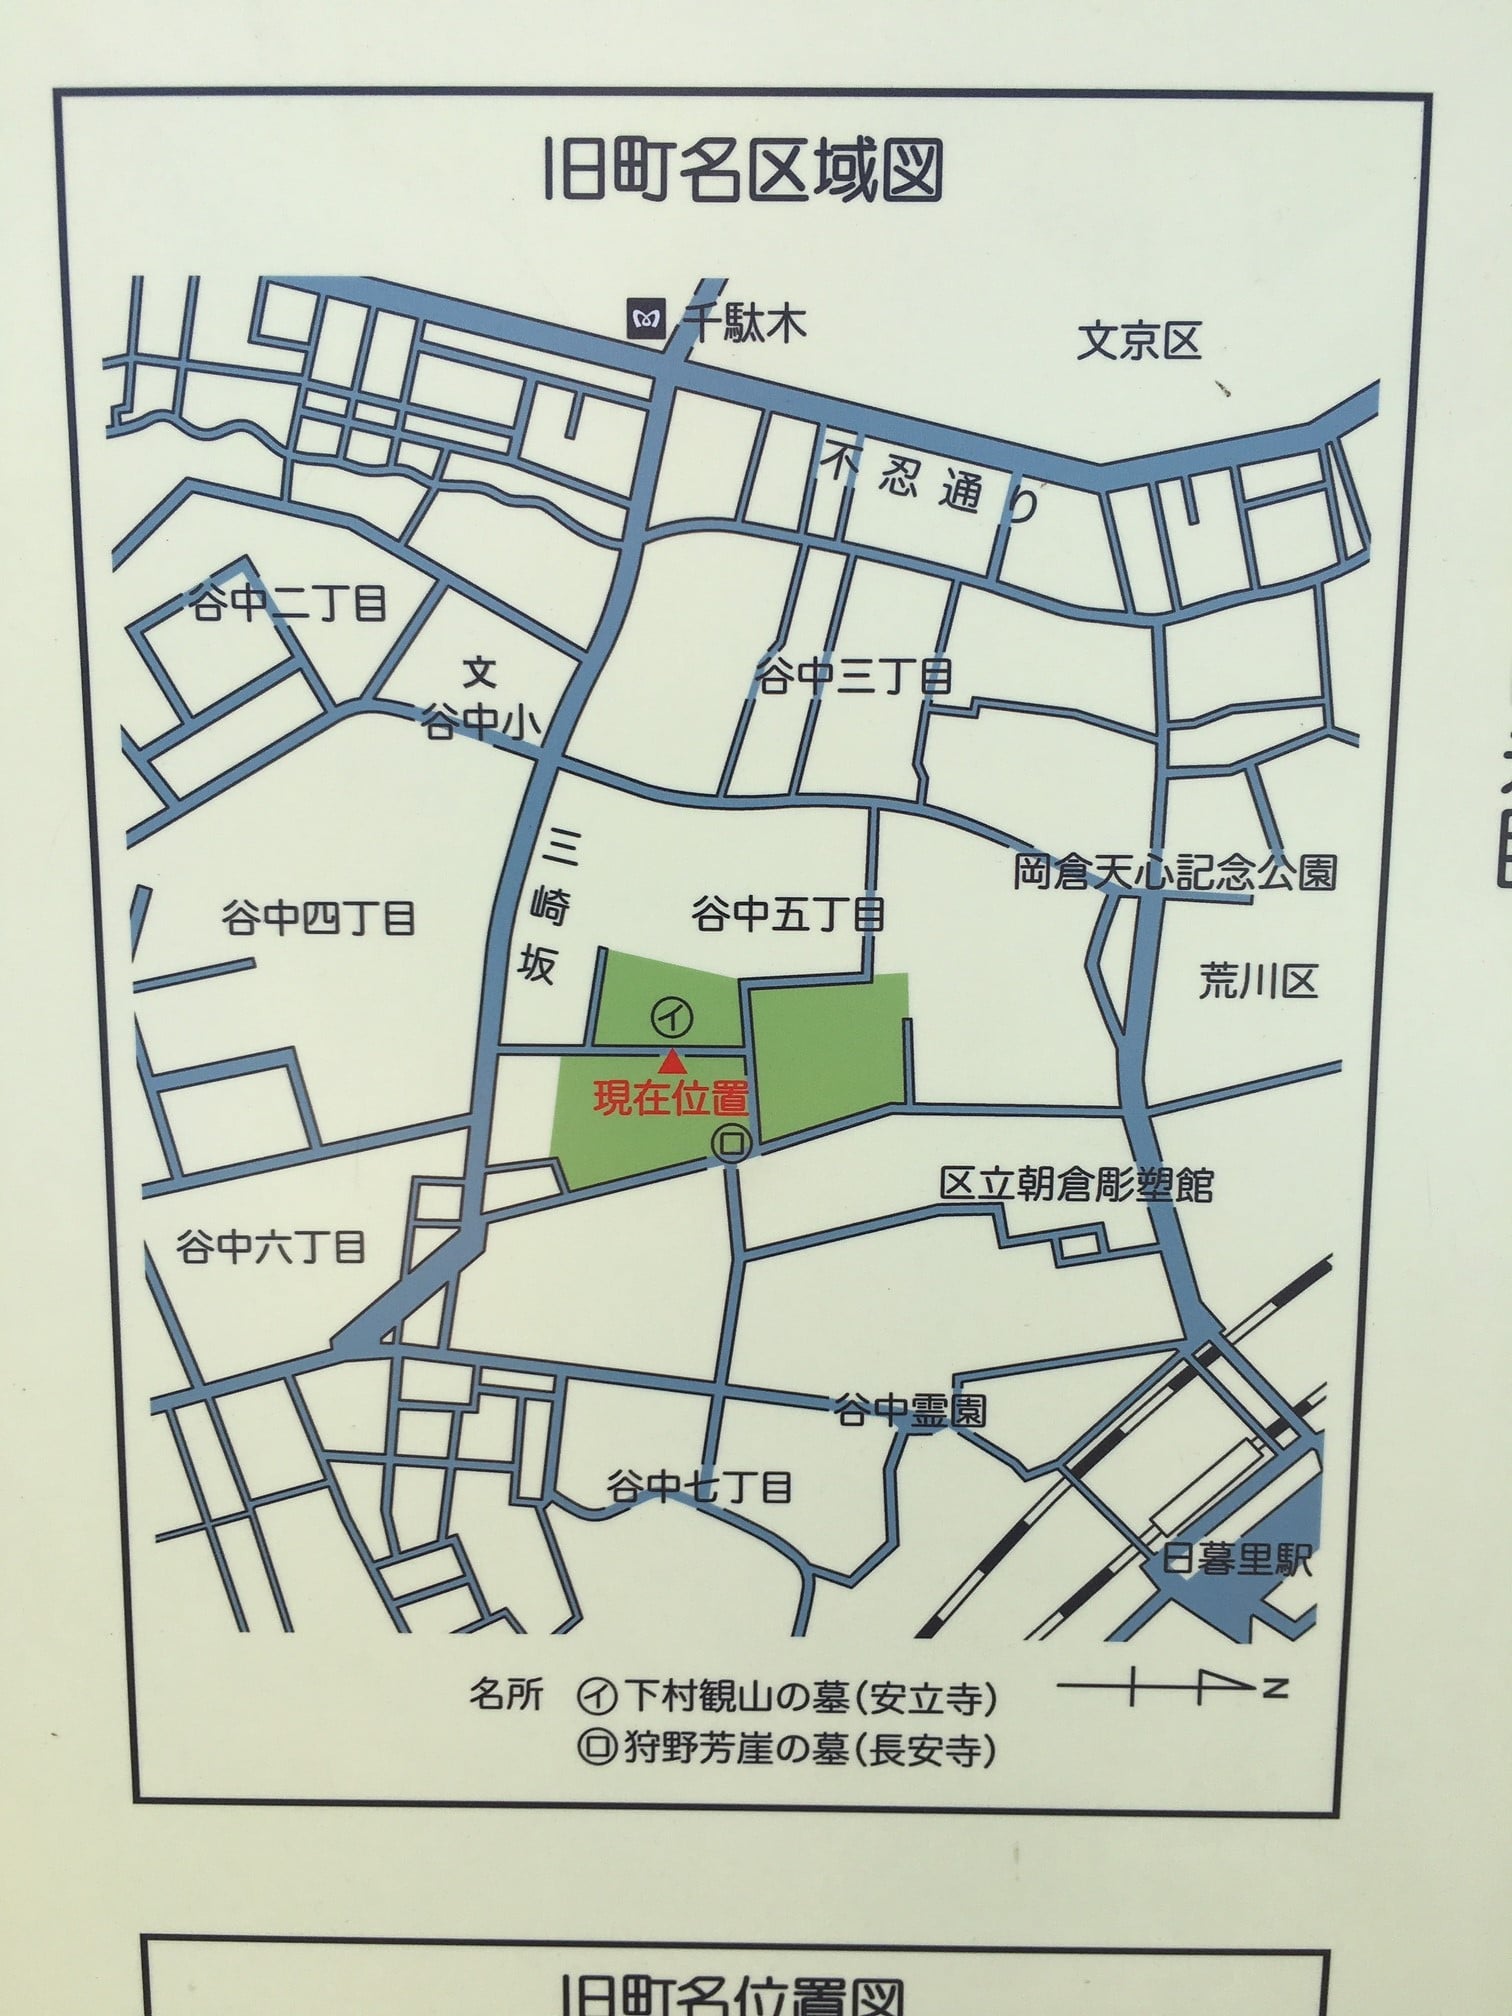 現在の地図にあてはめた谷中上三崎北町の区域図